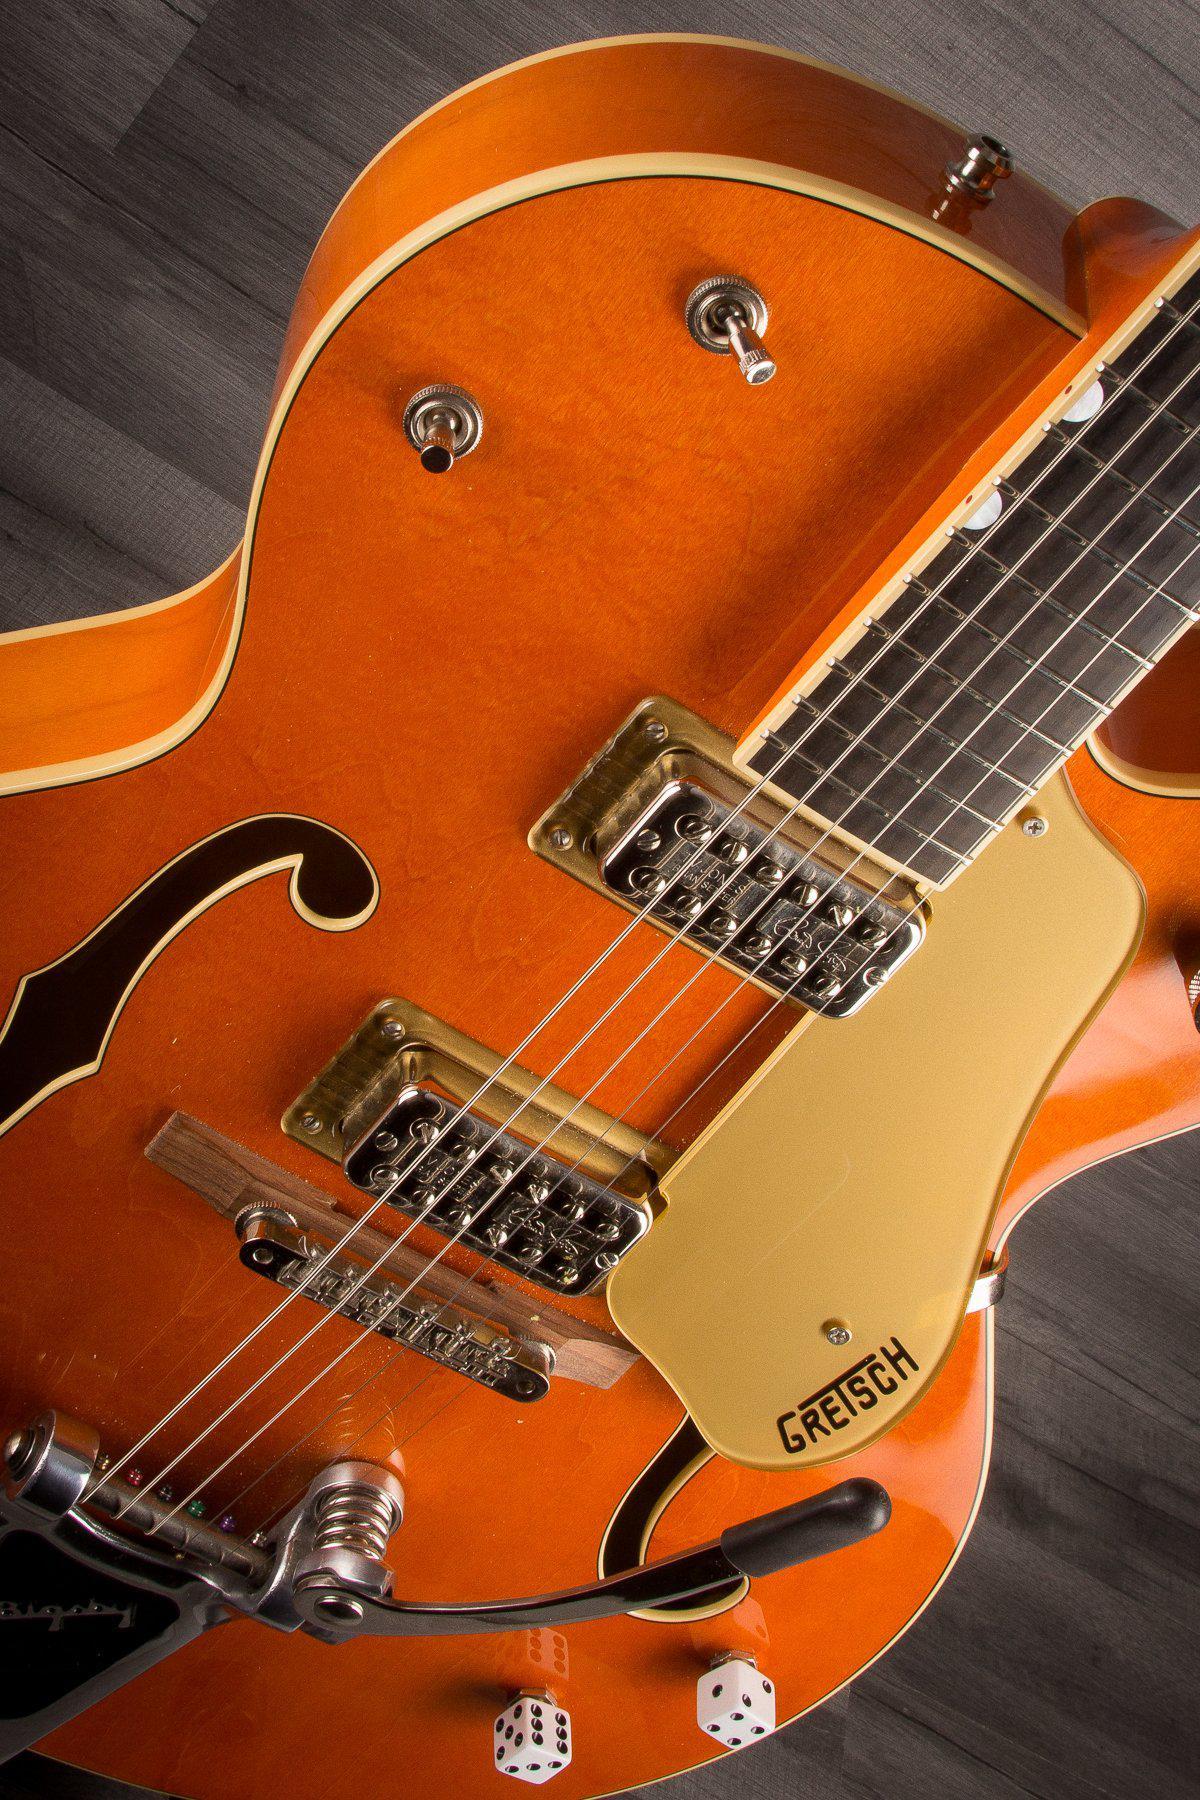 Gretsch Electric Guitar USED - Gretsch G6120SSLVO Brian Setzer Nashville